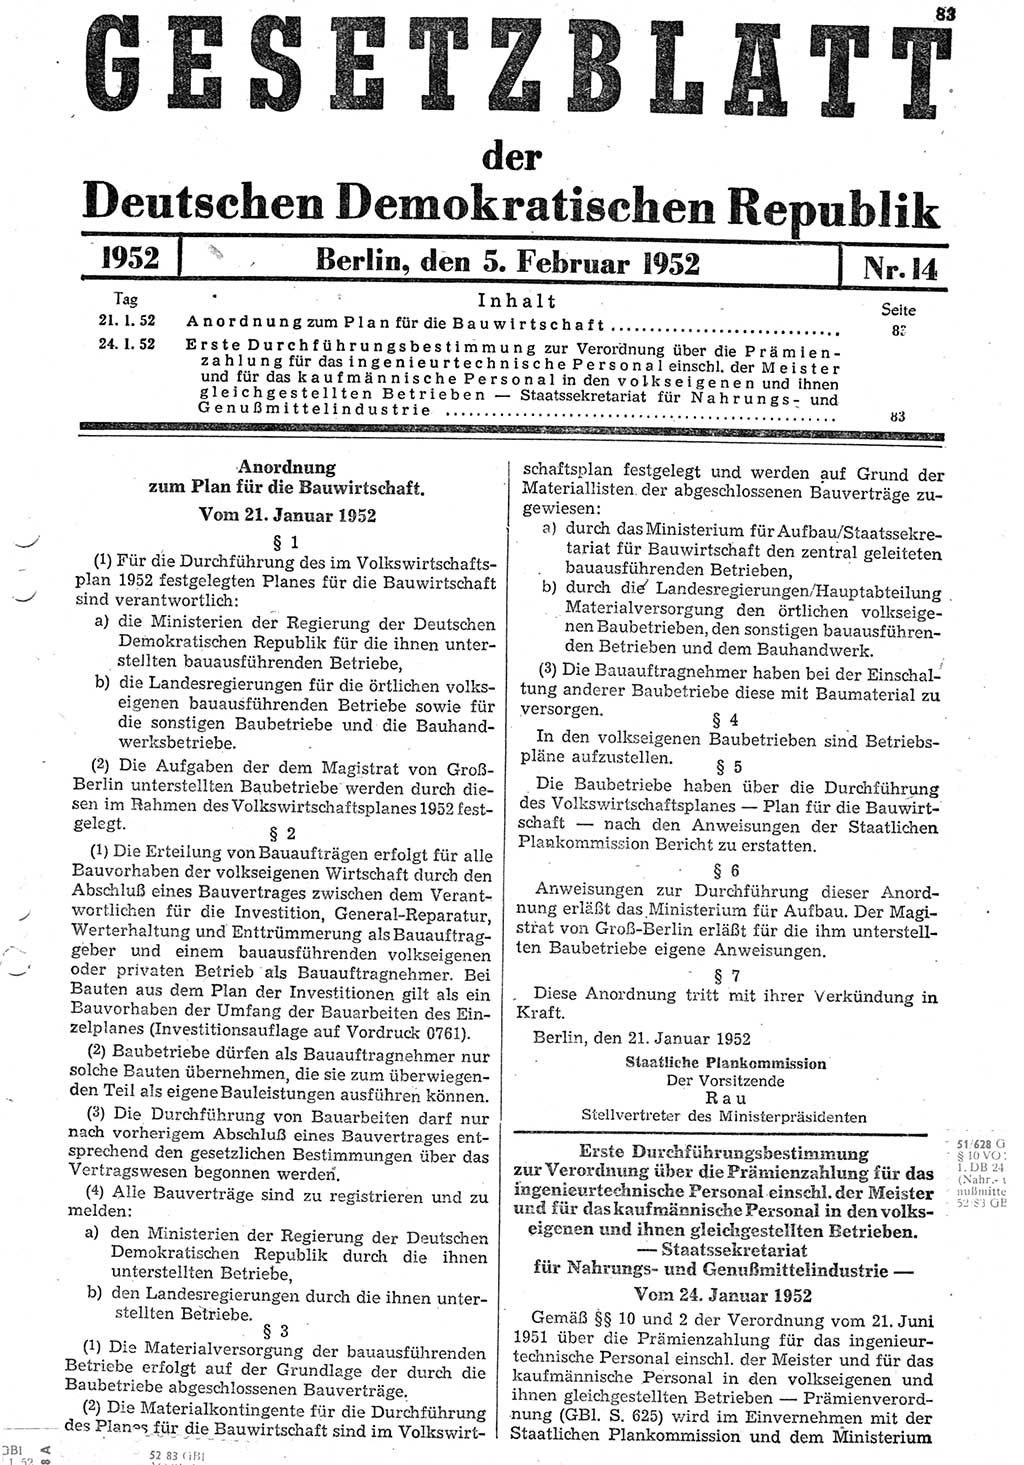 Gesetzblatt (GBl.) der Deutschen Demokratischen Republik (DDR) 1952, Seite 83 (GBl. DDR 1952, S. 83)